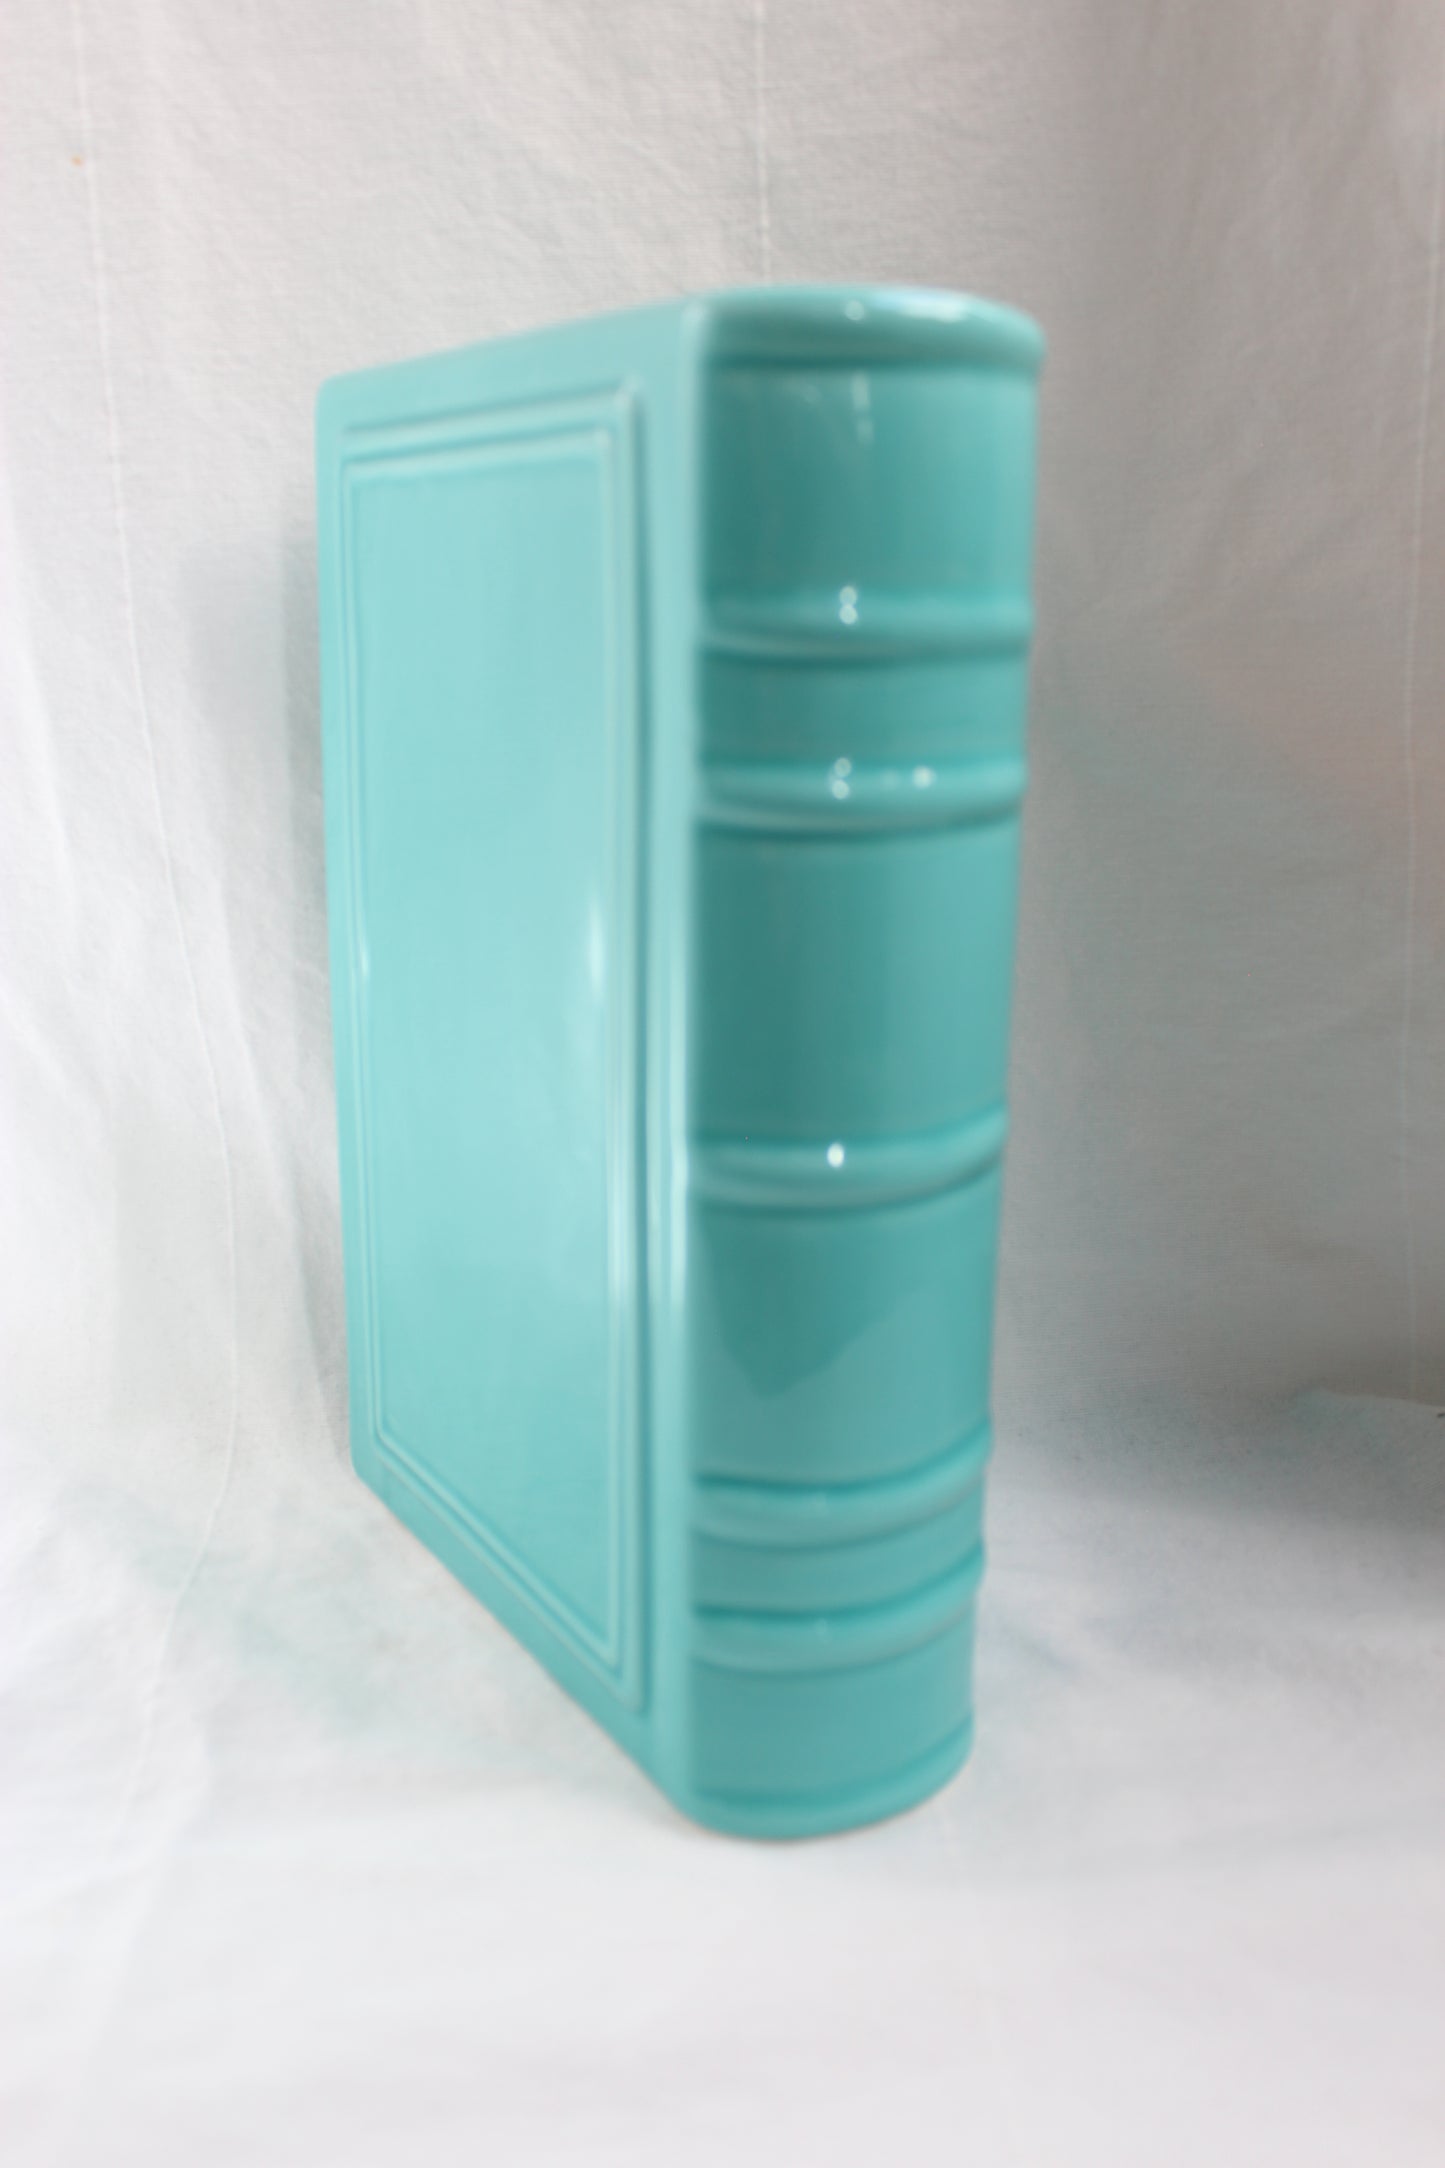 Blue ceramic book